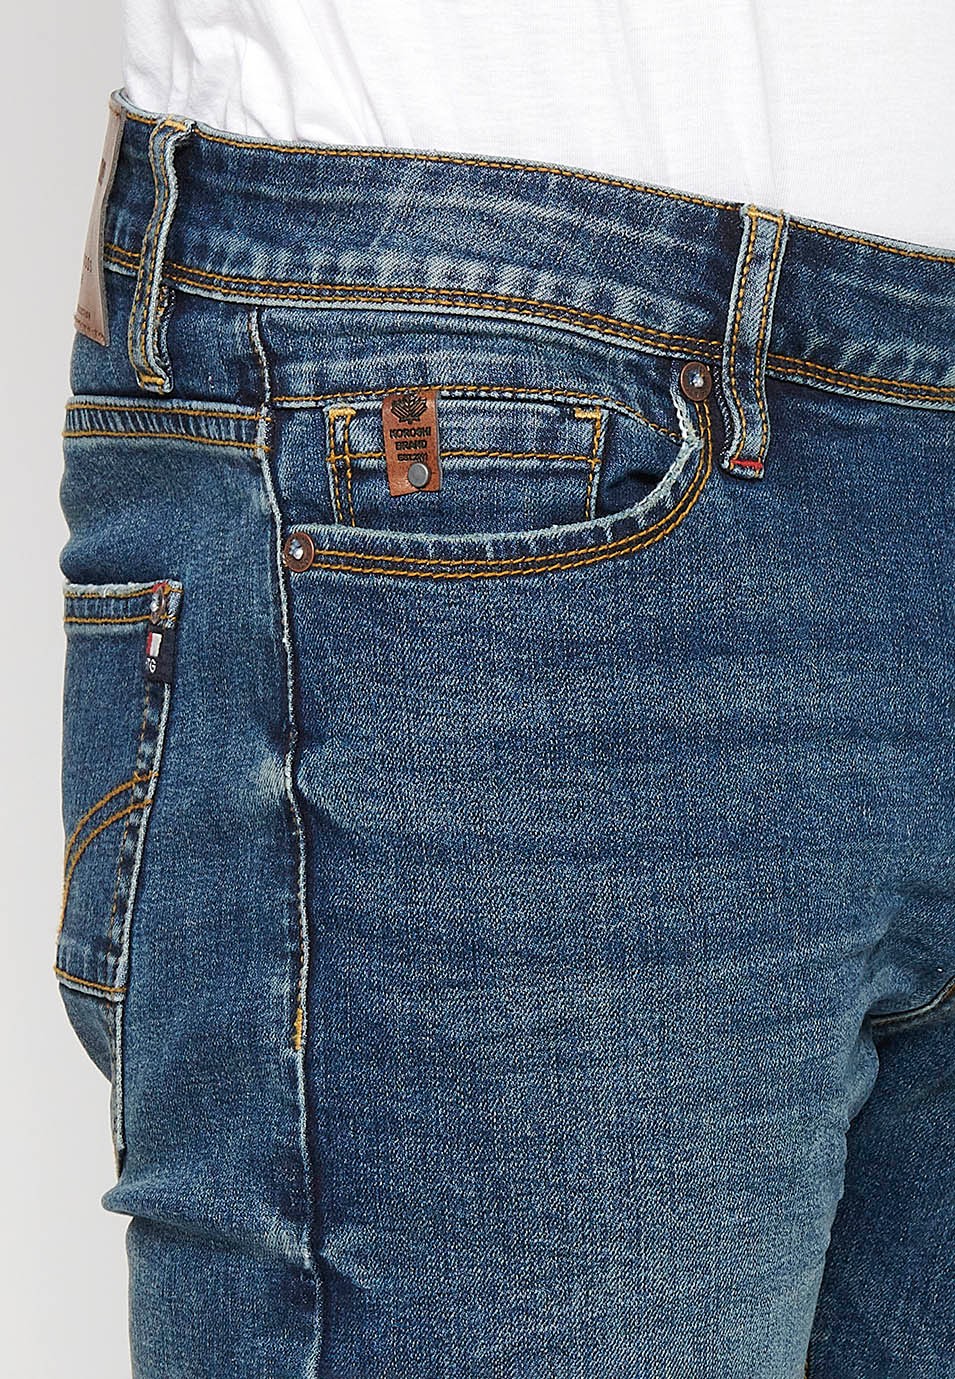 Lange, gerade Jeanshose in normaler Passform mit Reißverschluss und Knopfverschluss vorne und fünf Taschen, eine blaue Tasche für Herren 9